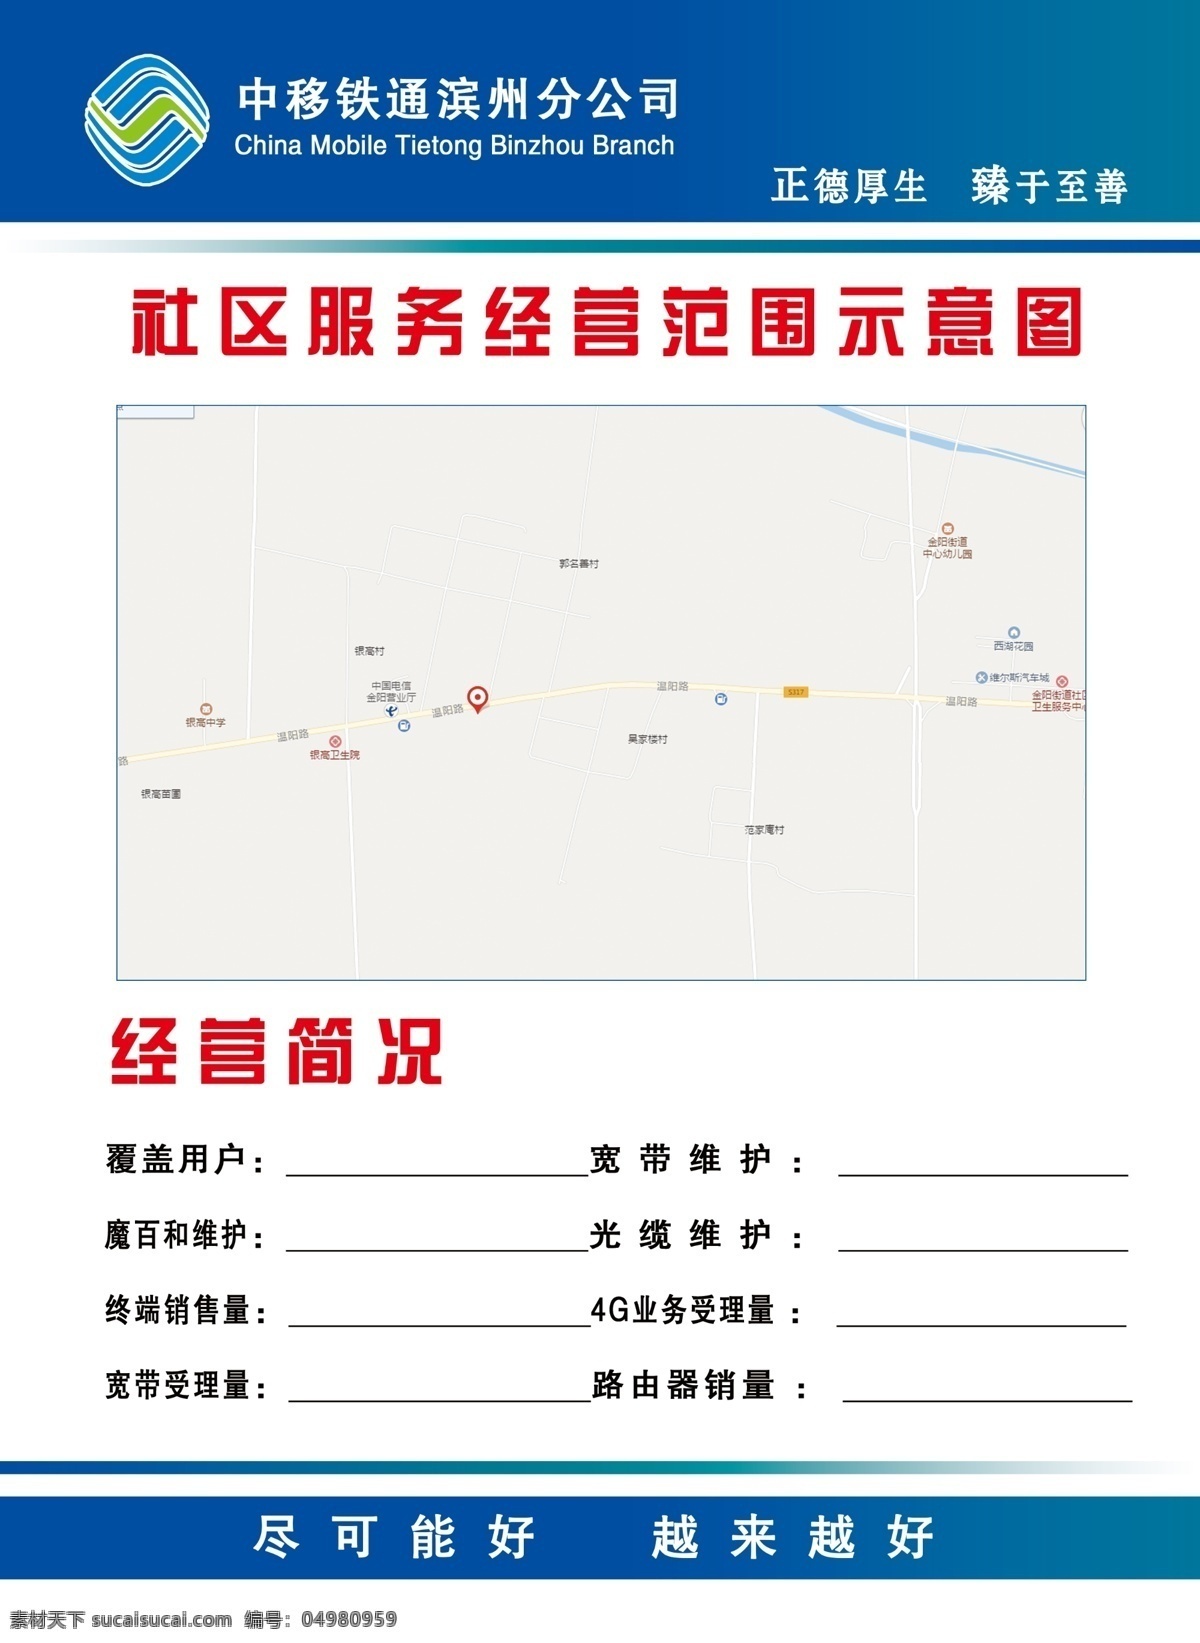 中国移动 社区 经营范围 示意图 社区经营 范围示意图 移动标志 展板背景 蓝色背景